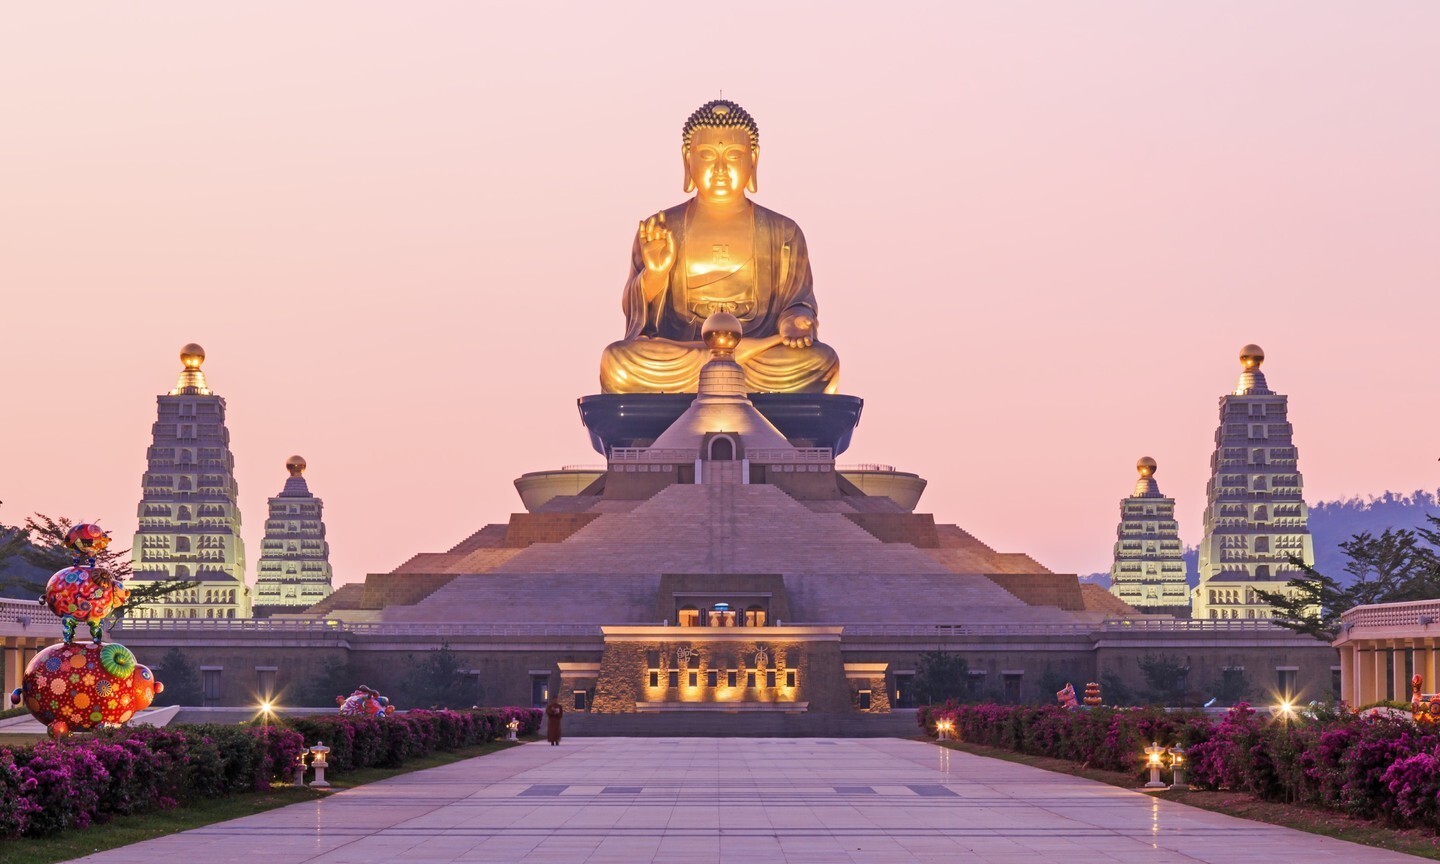 Bạn có muốn khám phá những tượng Phật khổng lồ đẹp nhất thế giới không? Đây là danh sách các tượng Phật đáng chú ý nhất và nổi tiếng nhất trên toàn cầu. Sự kết hợp giữa kiến ​​trúc độc đáo và công nghệ tinh vi đã tạo ra những tác phẩm nghệ thuật tuyệt đẹp để tôn vinh văn hóa Phật giáo.